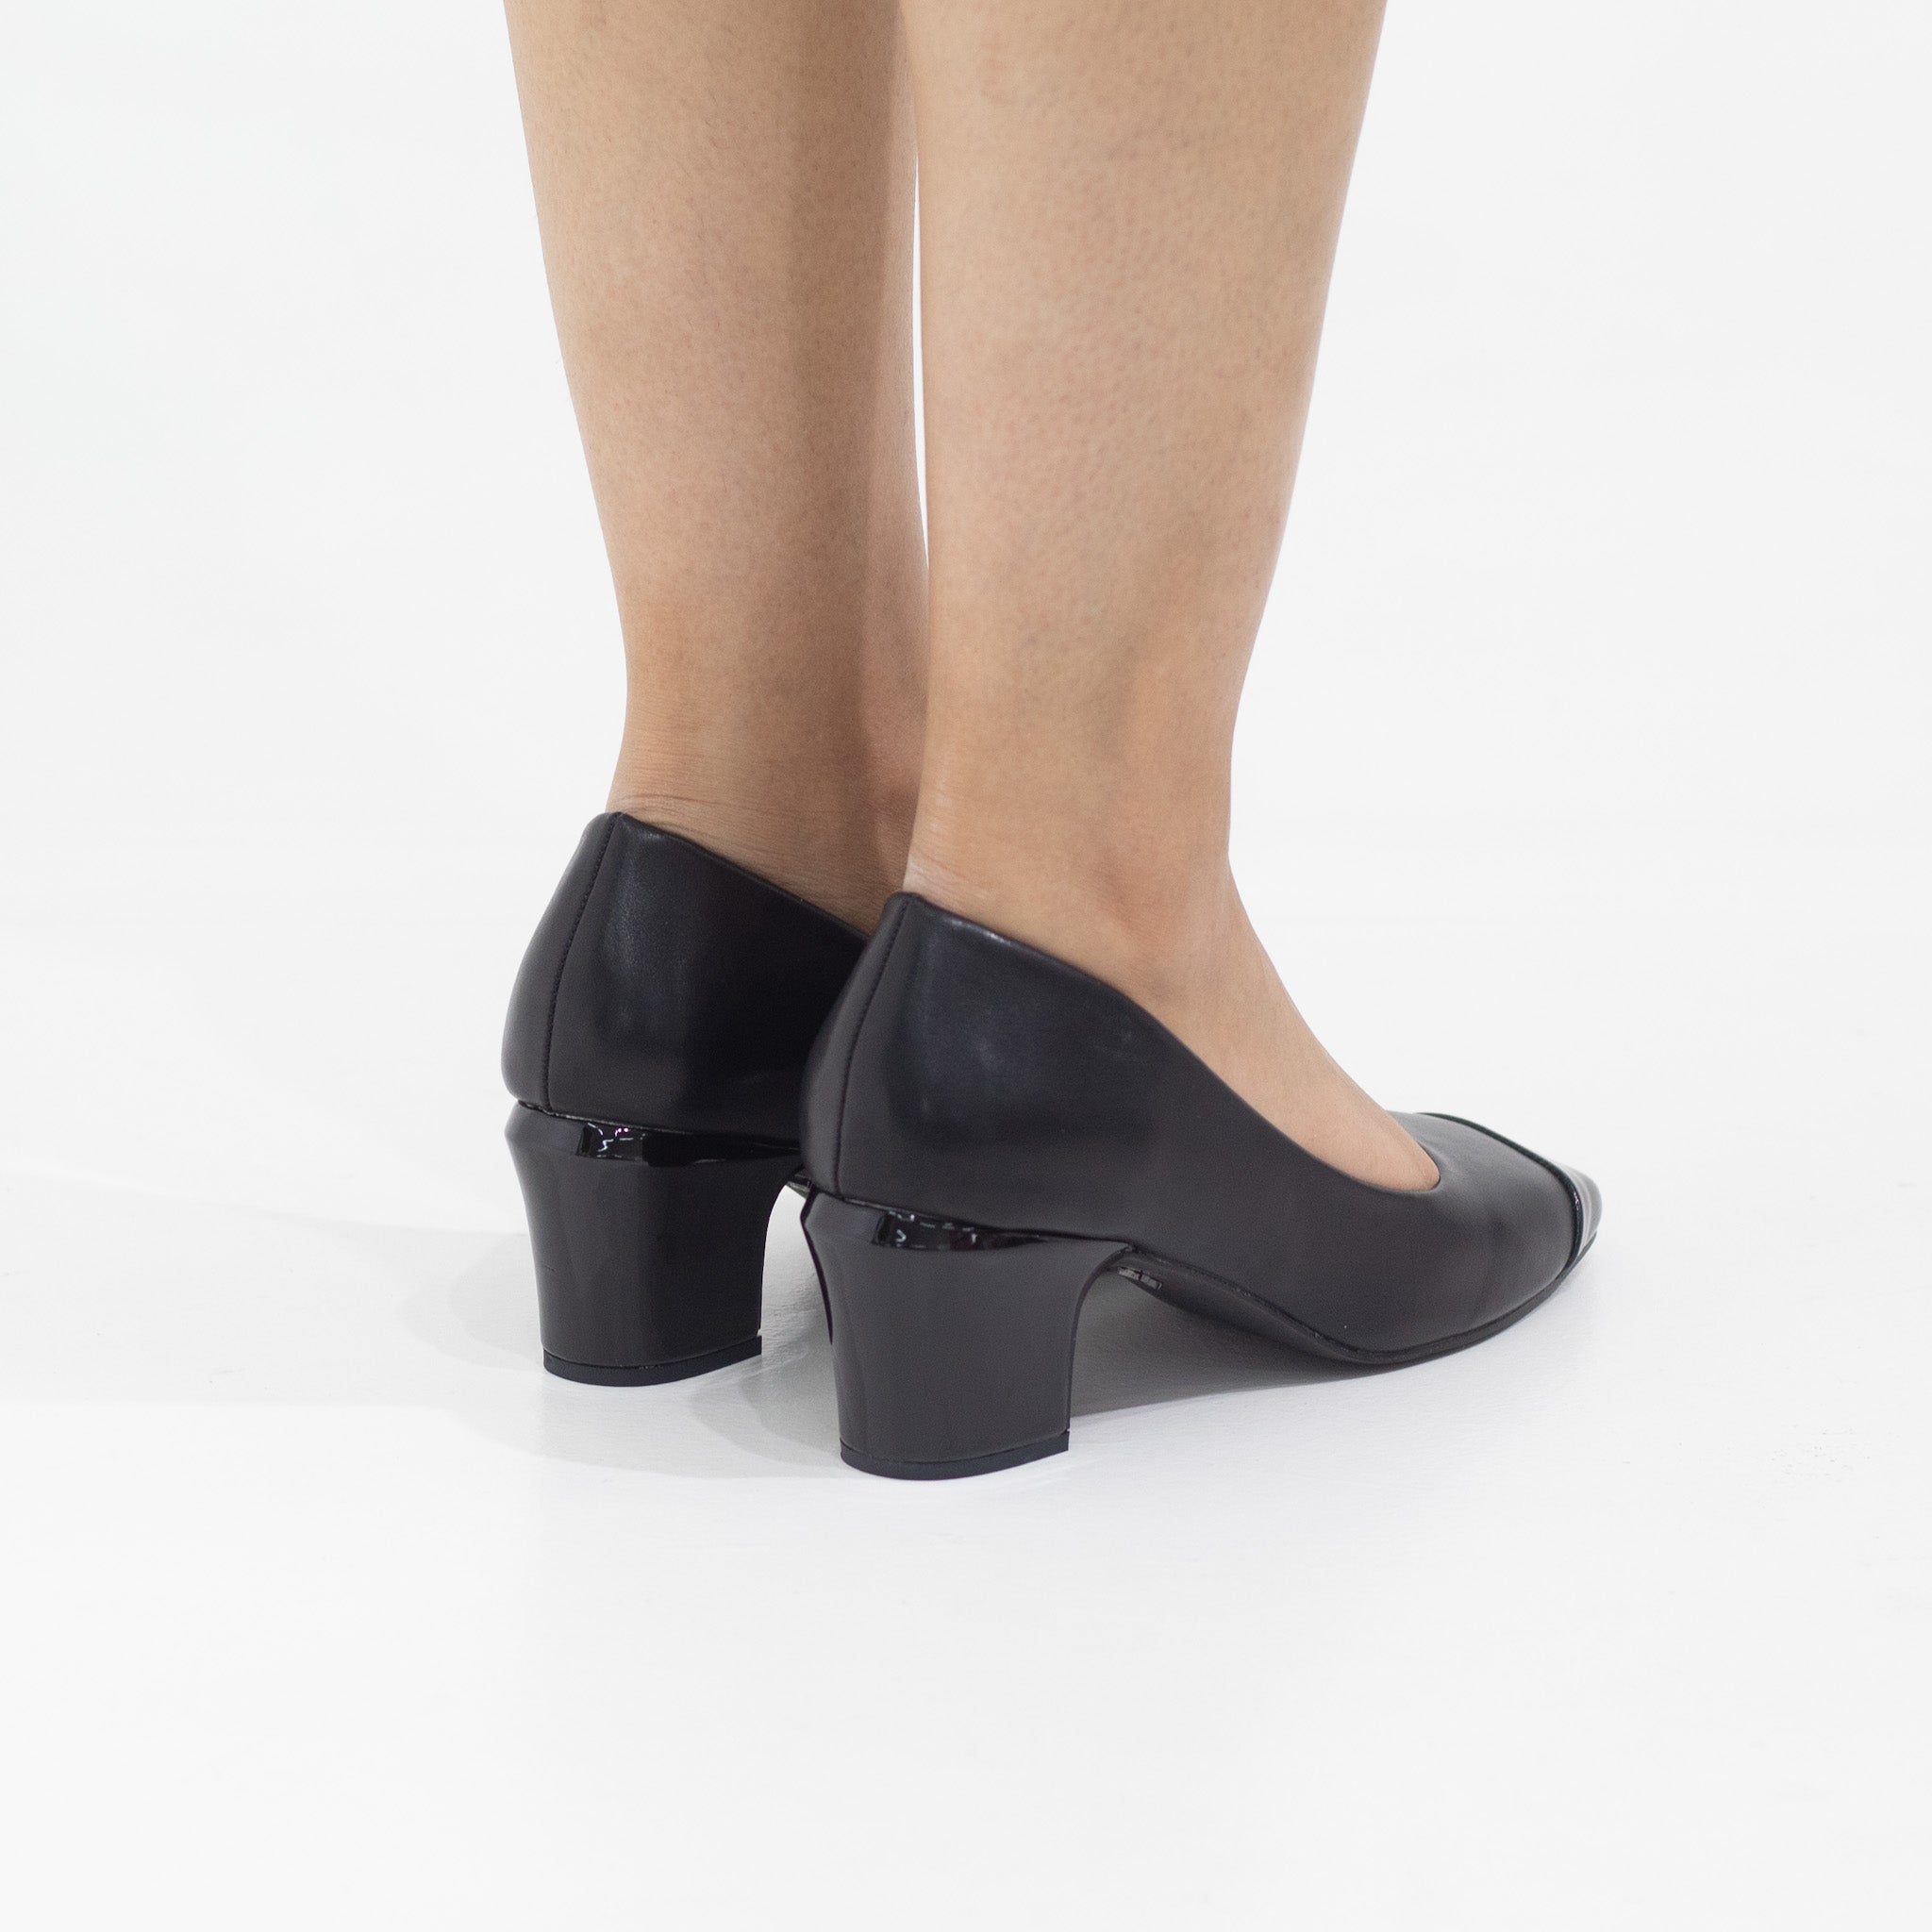 Black comfy 5cm heel pointy court shoe delilah